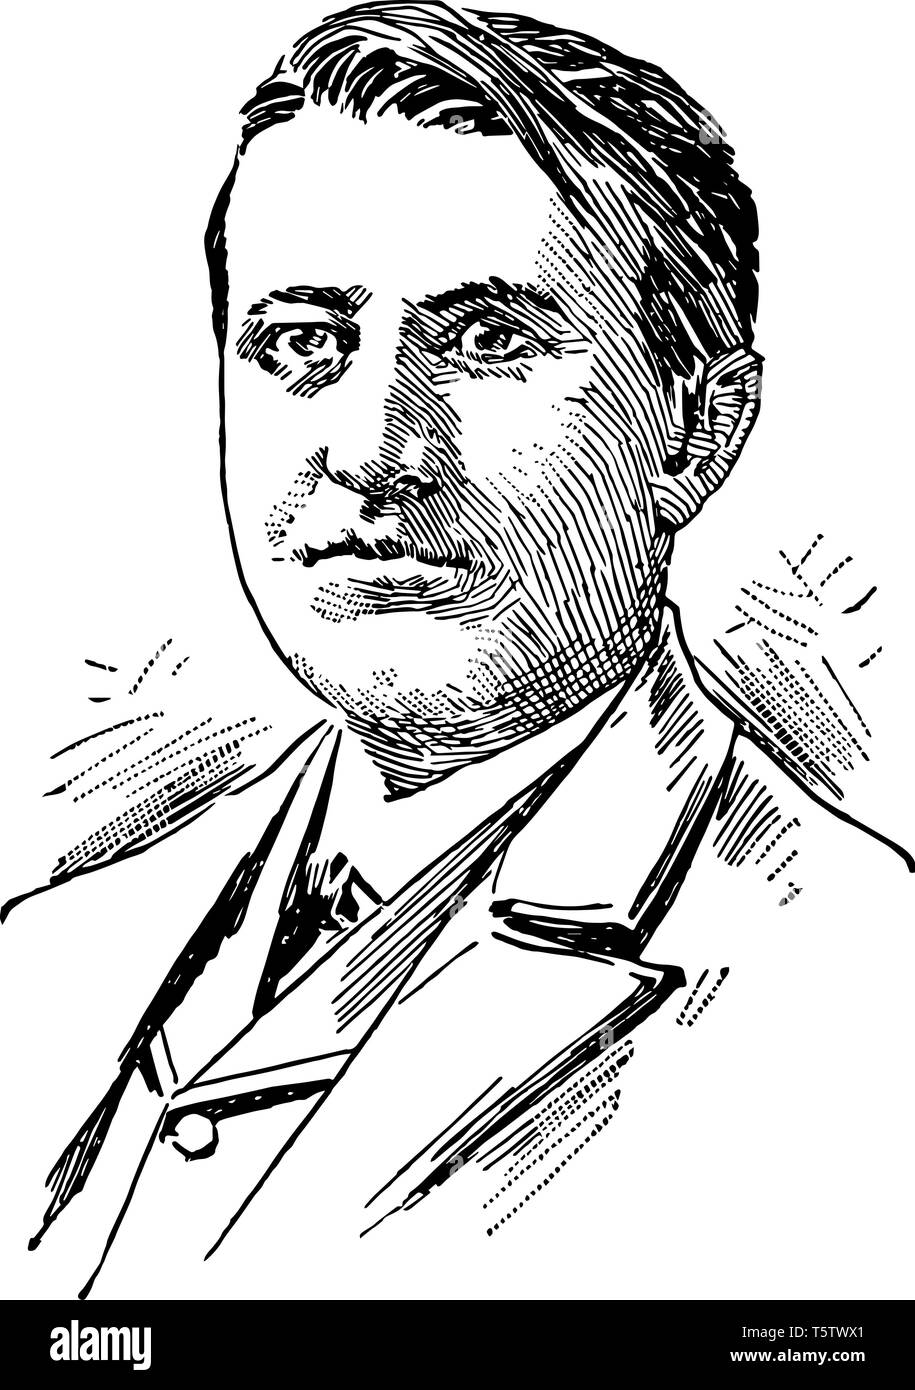 Thomas Alva Edison 1847 bis 1931 Er war ein US-amerikanischer Erfinder und Geschäftsmann als einer der ersten Erfinder zu den Prinzipien der Massenproduktion vint anwenden Stock Vektor